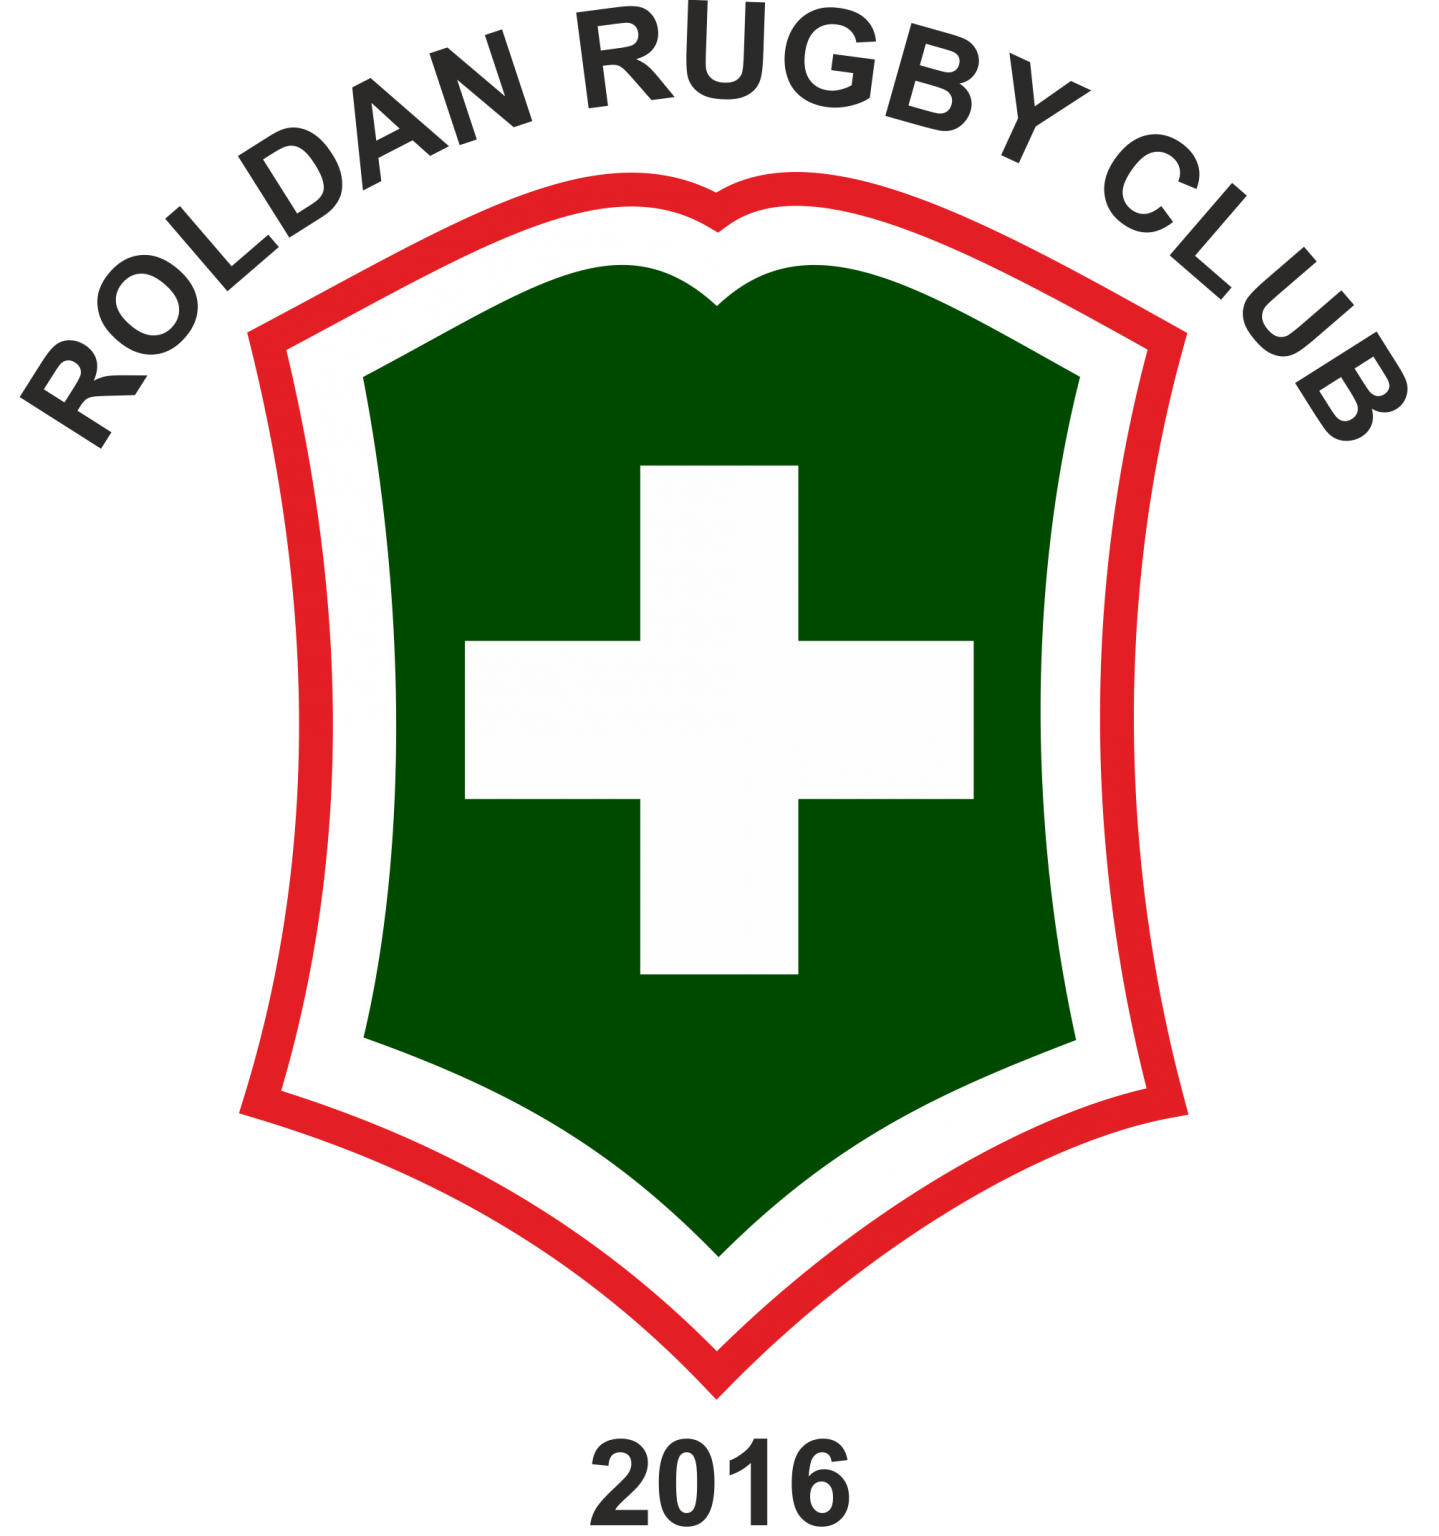 ESCUDO-ROLDAN-RUGBY-CLUB-1439x1536